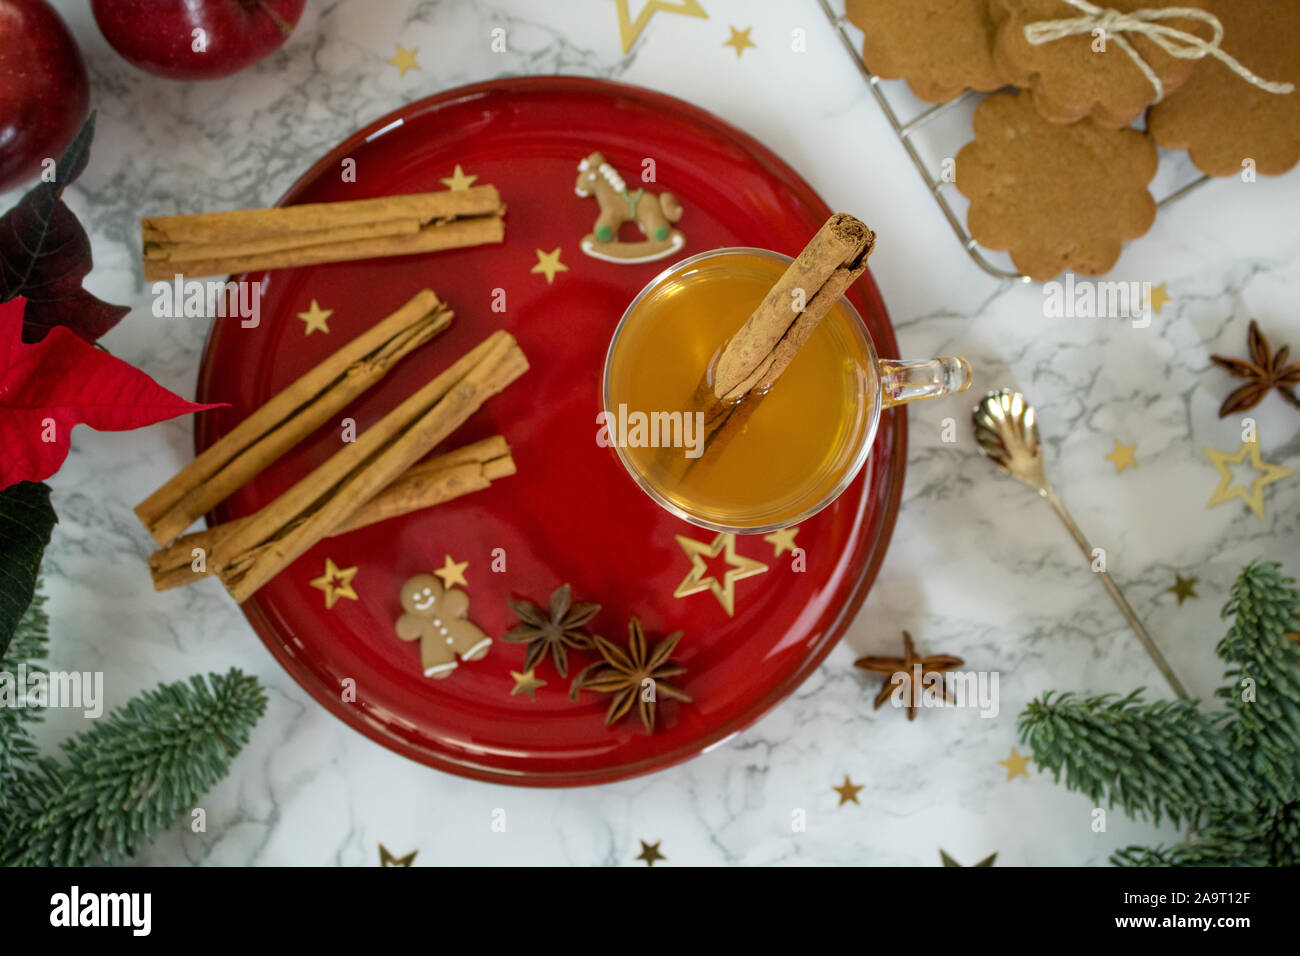 Essen Fotografie von einem Marmortisch top mit Chic stilvoll in rot-gold eingerichtete Chistmas cookies und Gewürze Stockfoto